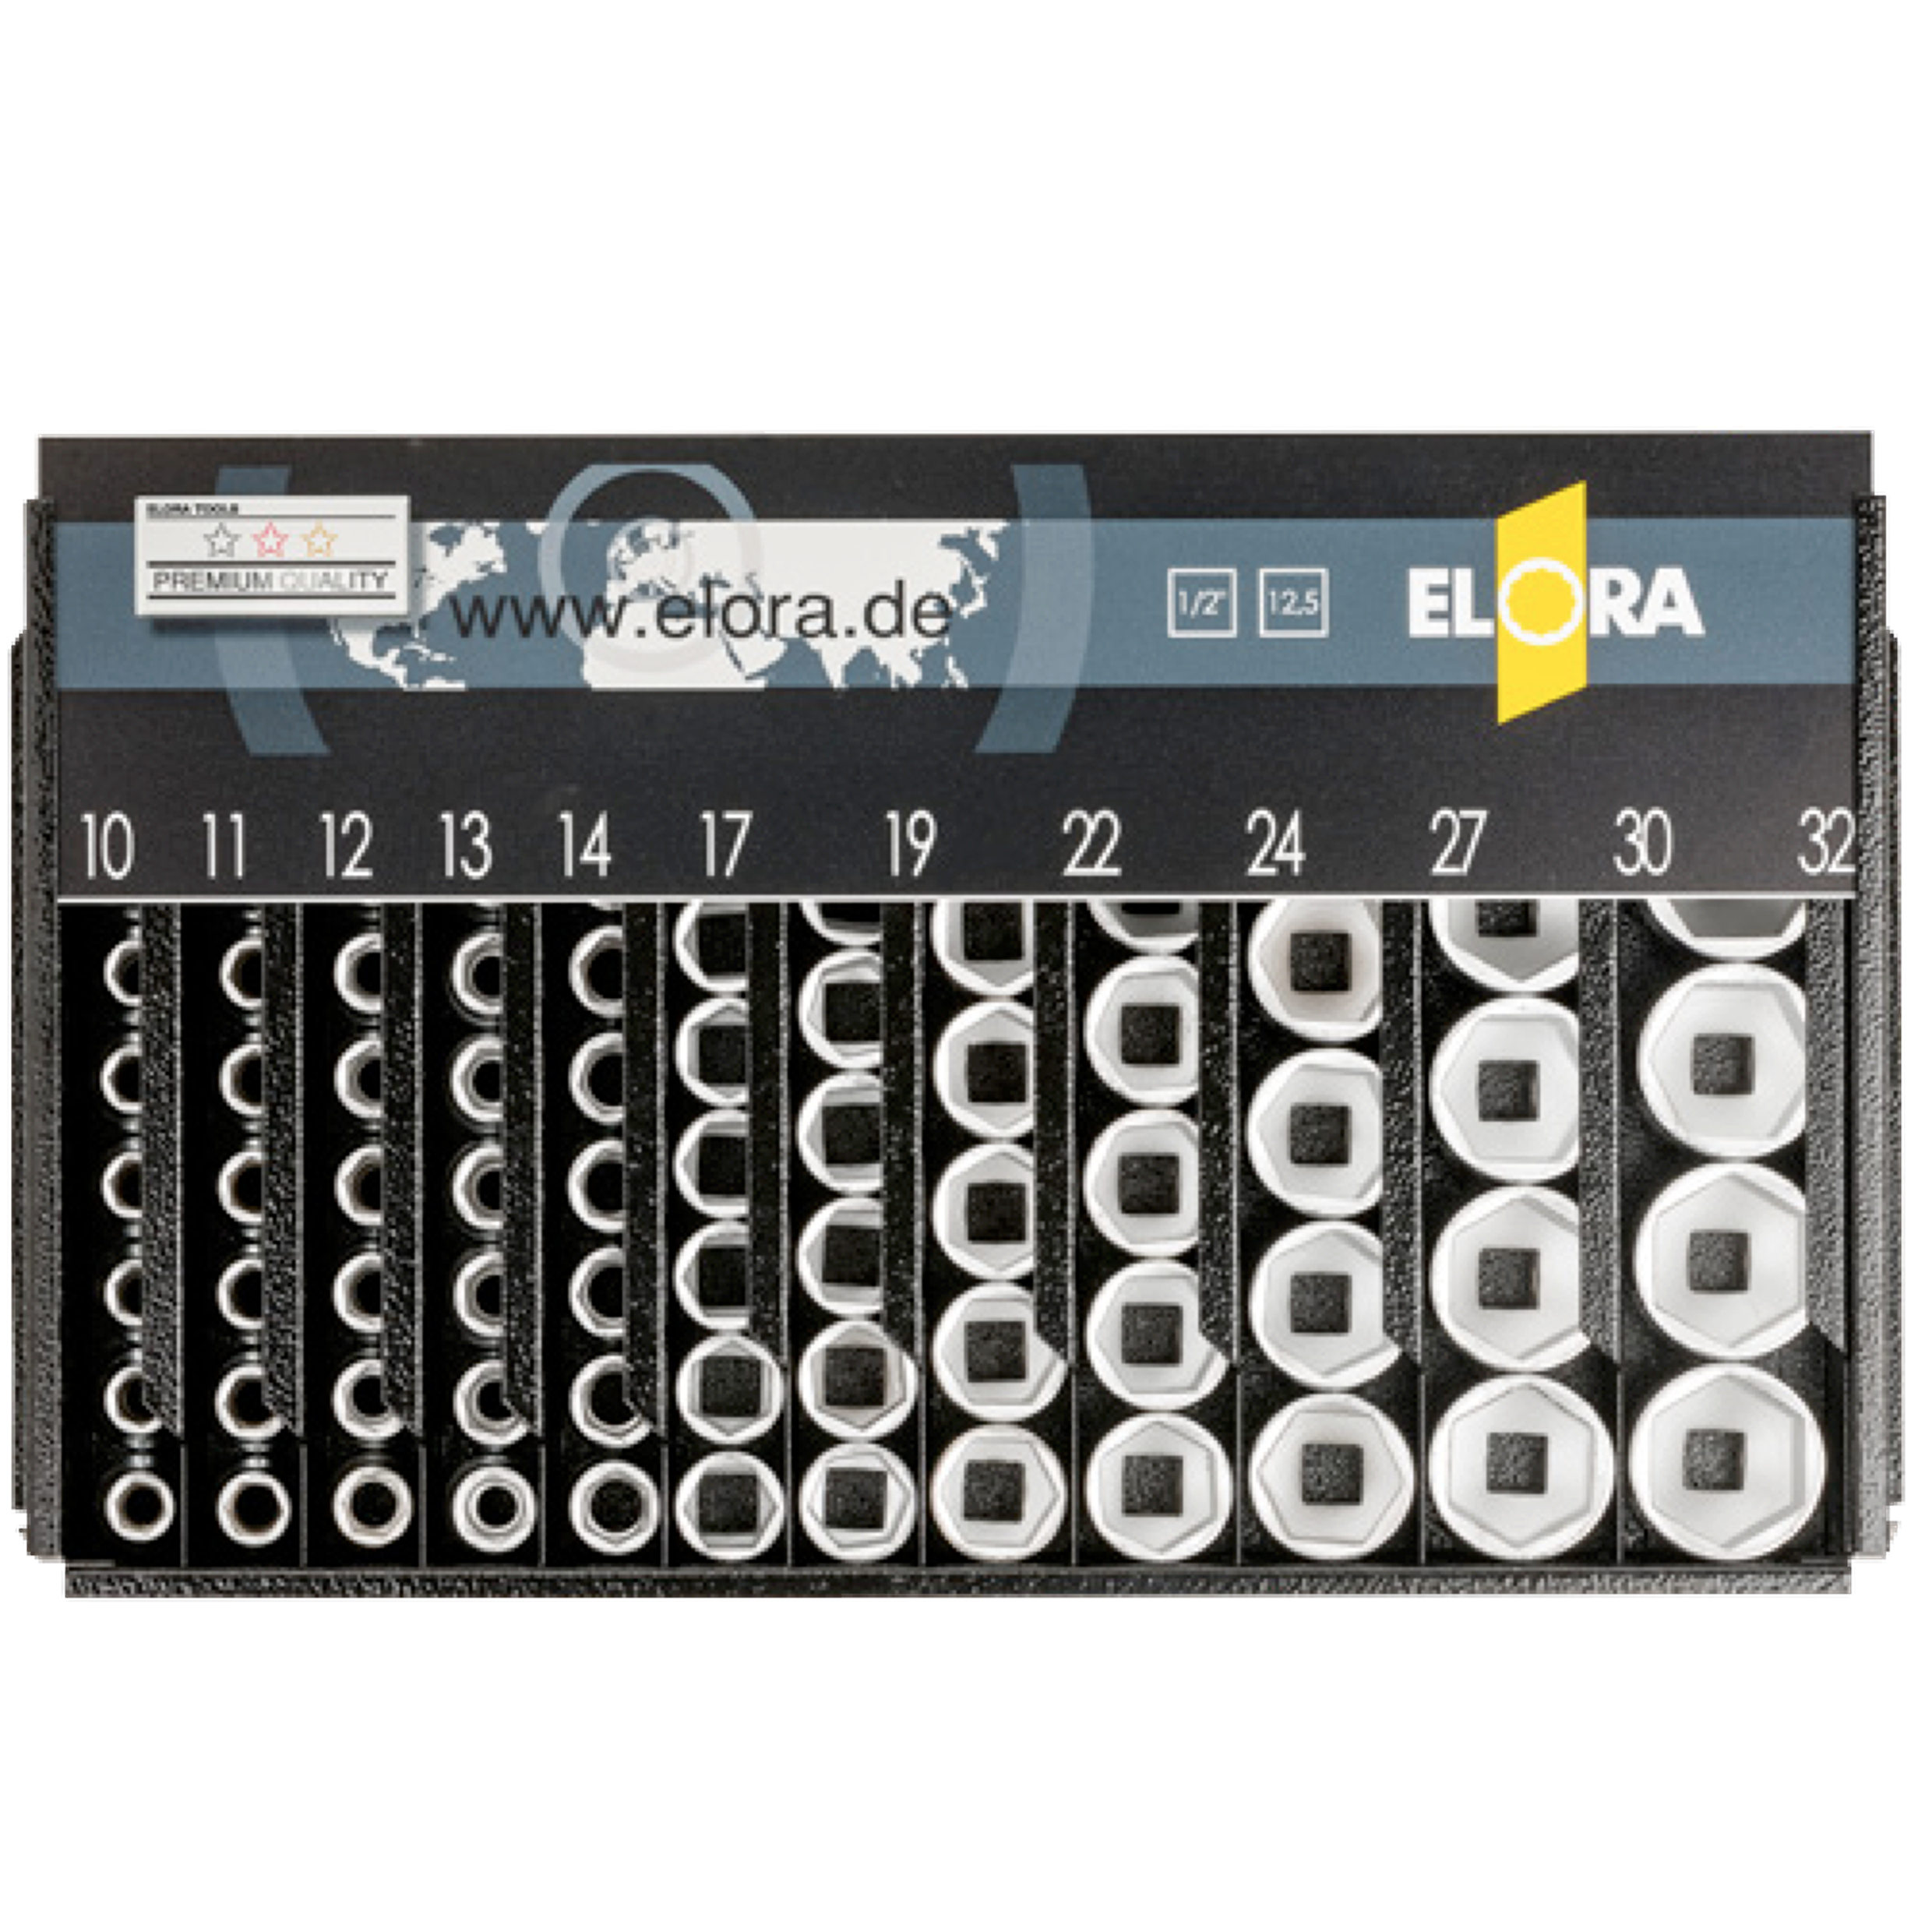 ELORA 770-LSP2A Socket Display Dispenser (ELORA Tools) - Premium Socket Display Dispenser from ELORA - Shop now at Yew Aik.